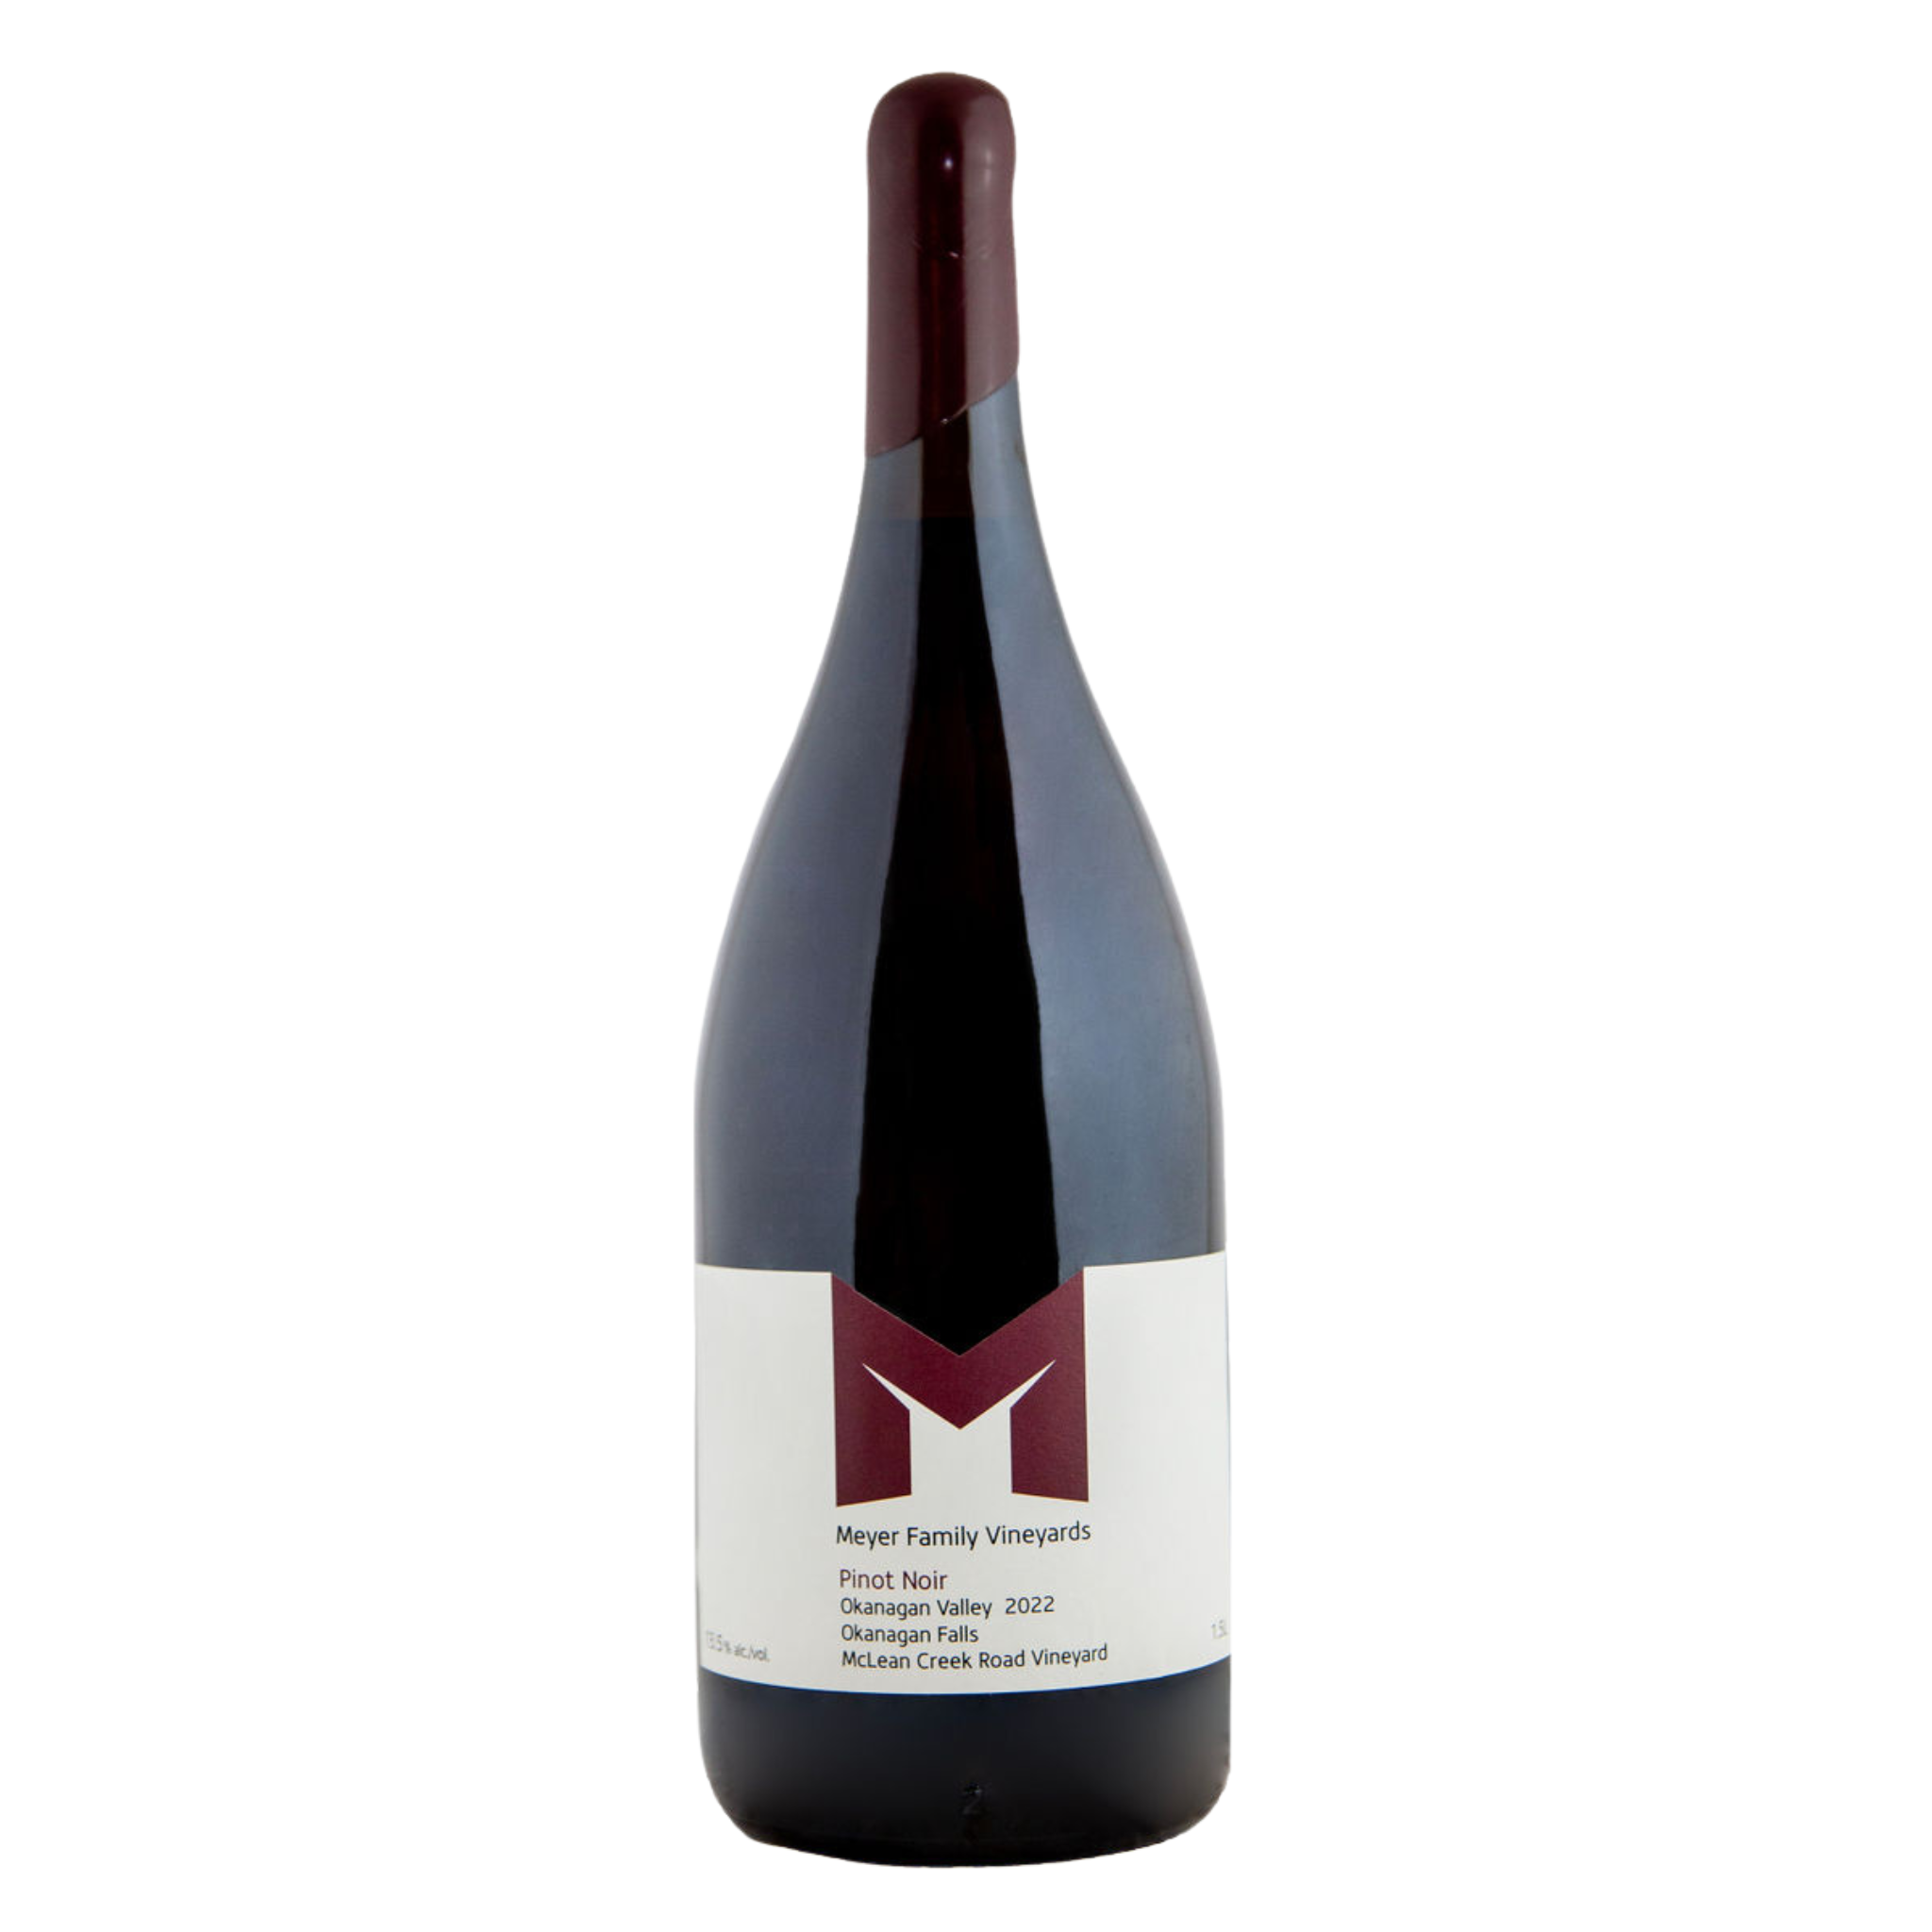 1.5L bottle of McLean Creek Rd Pinot Noir 2022